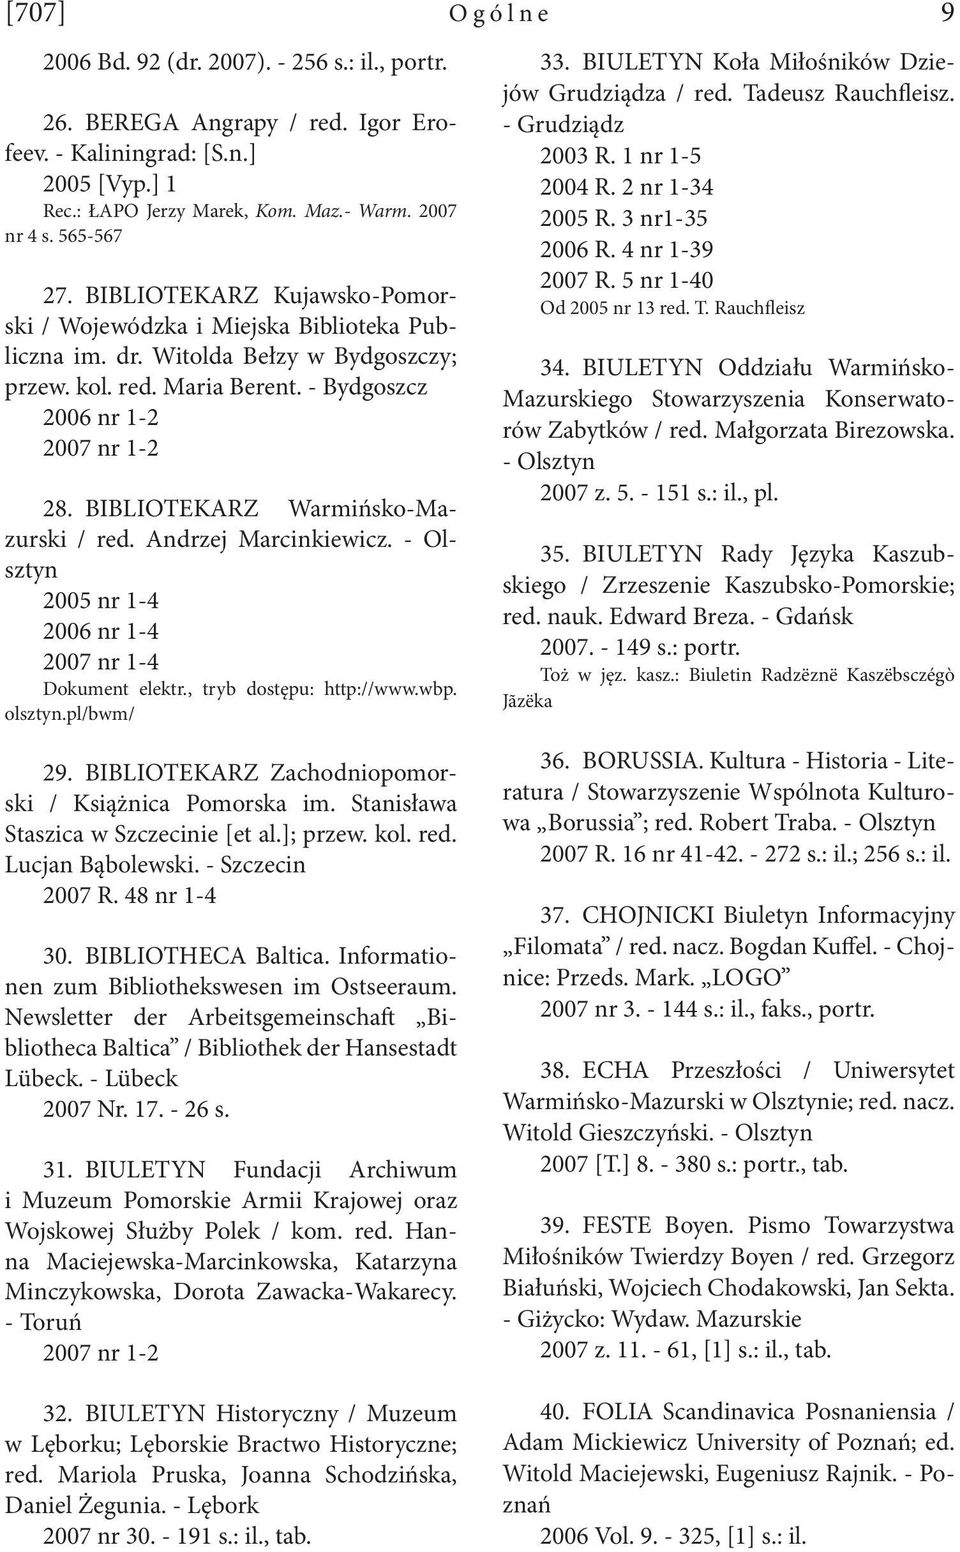 BIBLIOTEKARZ Warmińsko-Mazurski / red. Andrzej Marcinkiewicz. - Olsztyn 2005 nr 1-4 2006 nr 1-4 2007 nr 1-4 Dokument elektr., tryb dostępu: http://www.wbp. olsztyn.pl/bwm/ Ogólne 9 33.